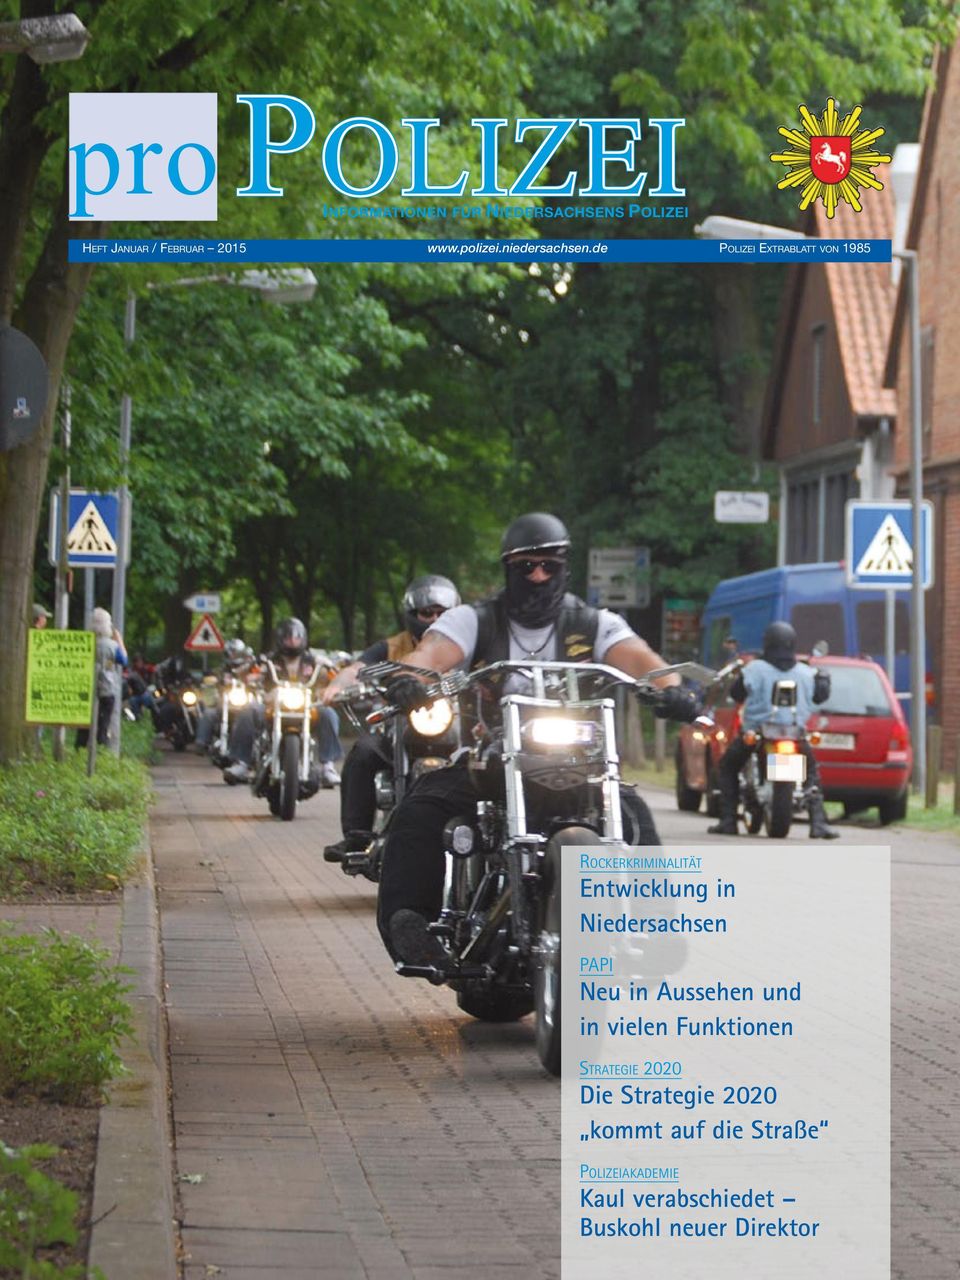 de Polizei Extrablatt von 1985 Rockerkriminalität Entwicklung in Niedersachsen PAPI